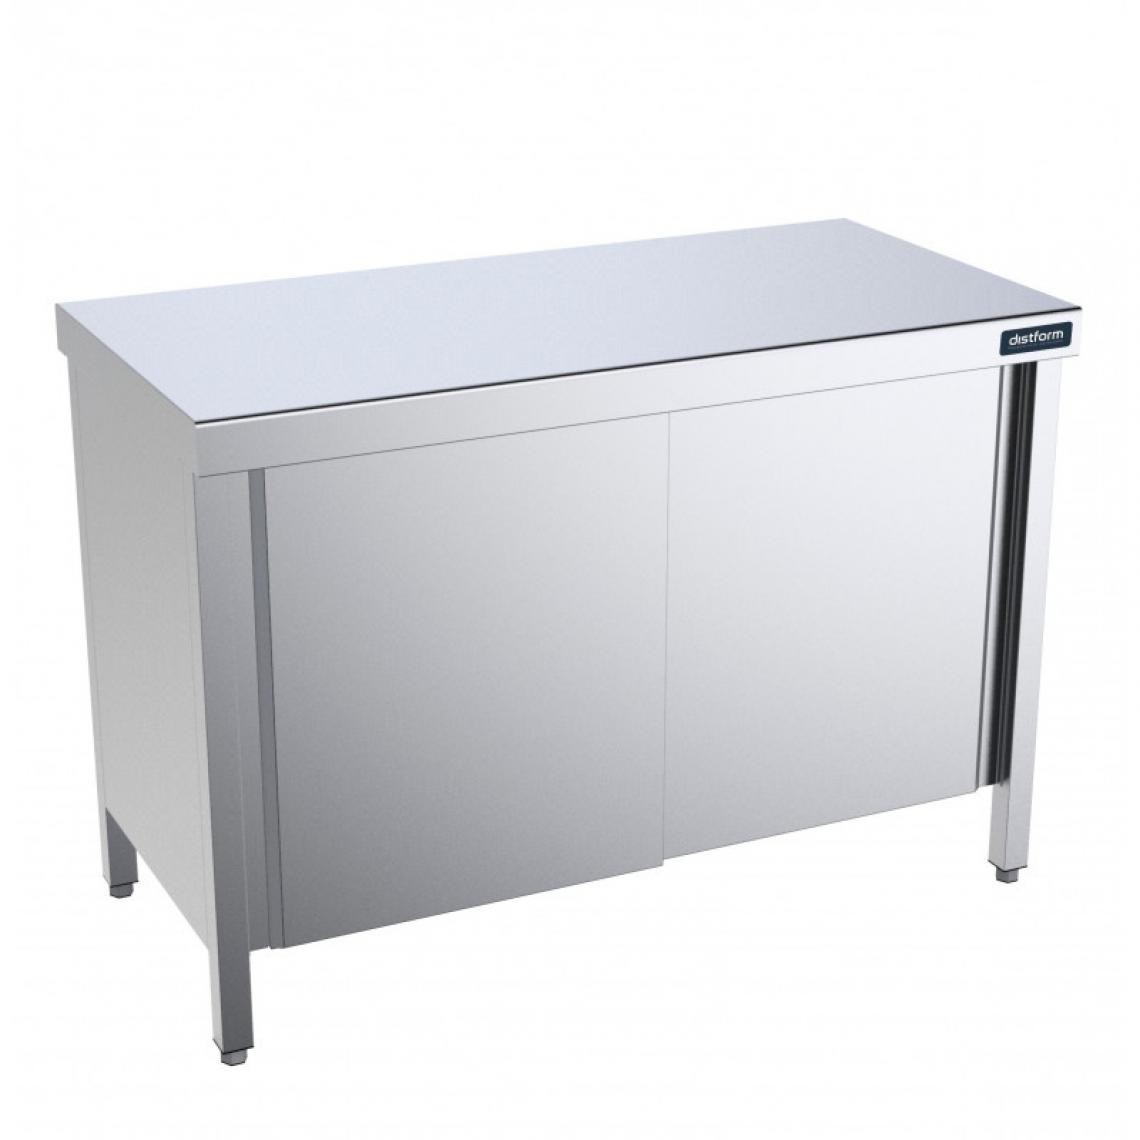 DISTFORM - Table Centrale avec Portes Battantes Profondeur 600mm - Distform - Acier inoxydable1000x600 - Tables à manger